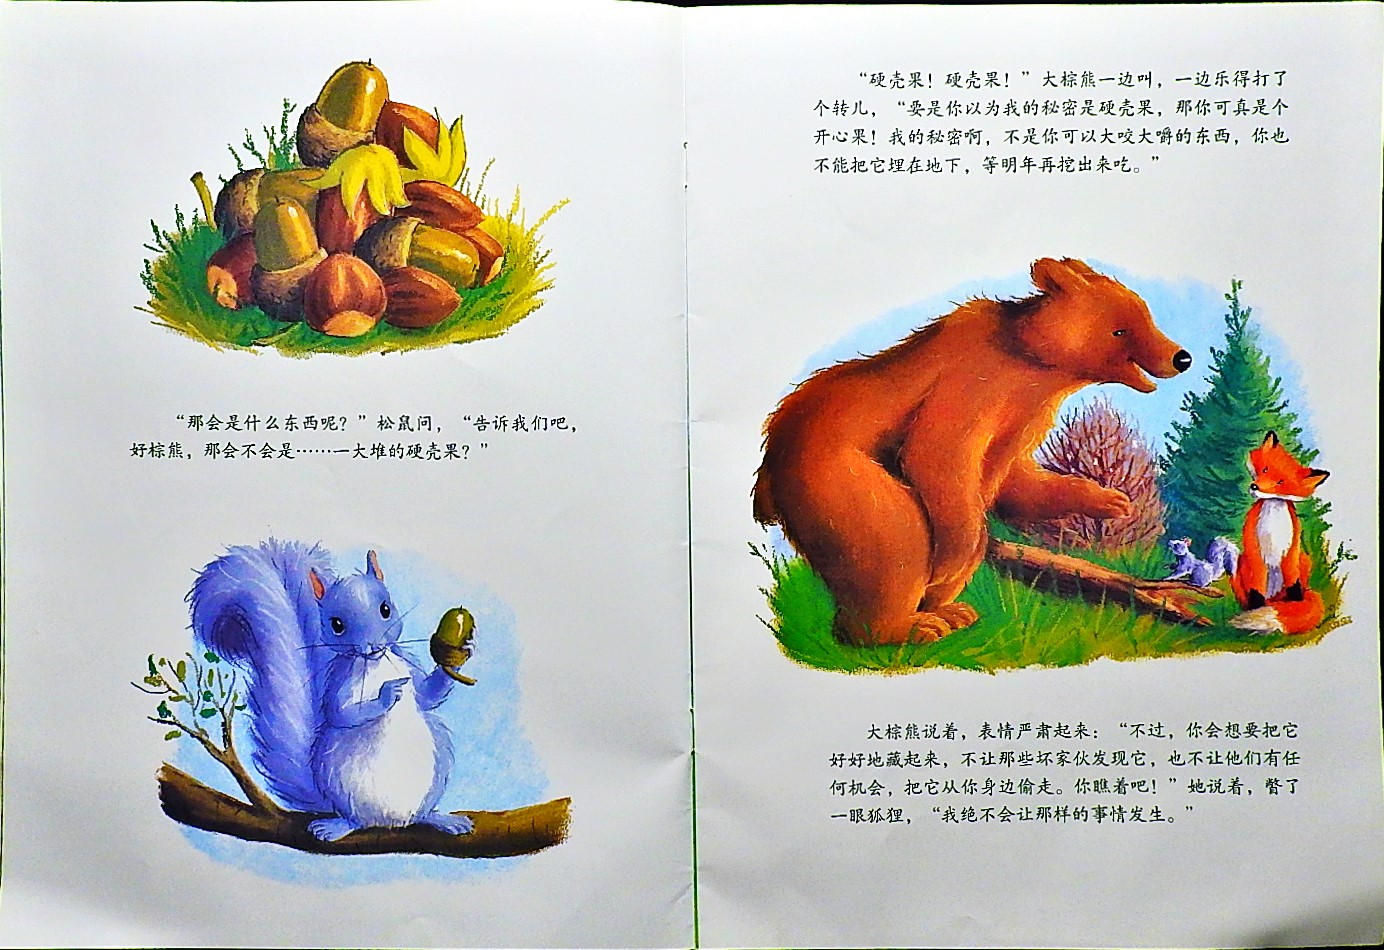 大棕熊的秘密 (07),绘本,绘本故事,绘本阅读,故事书,童书,图画书,课外阅读